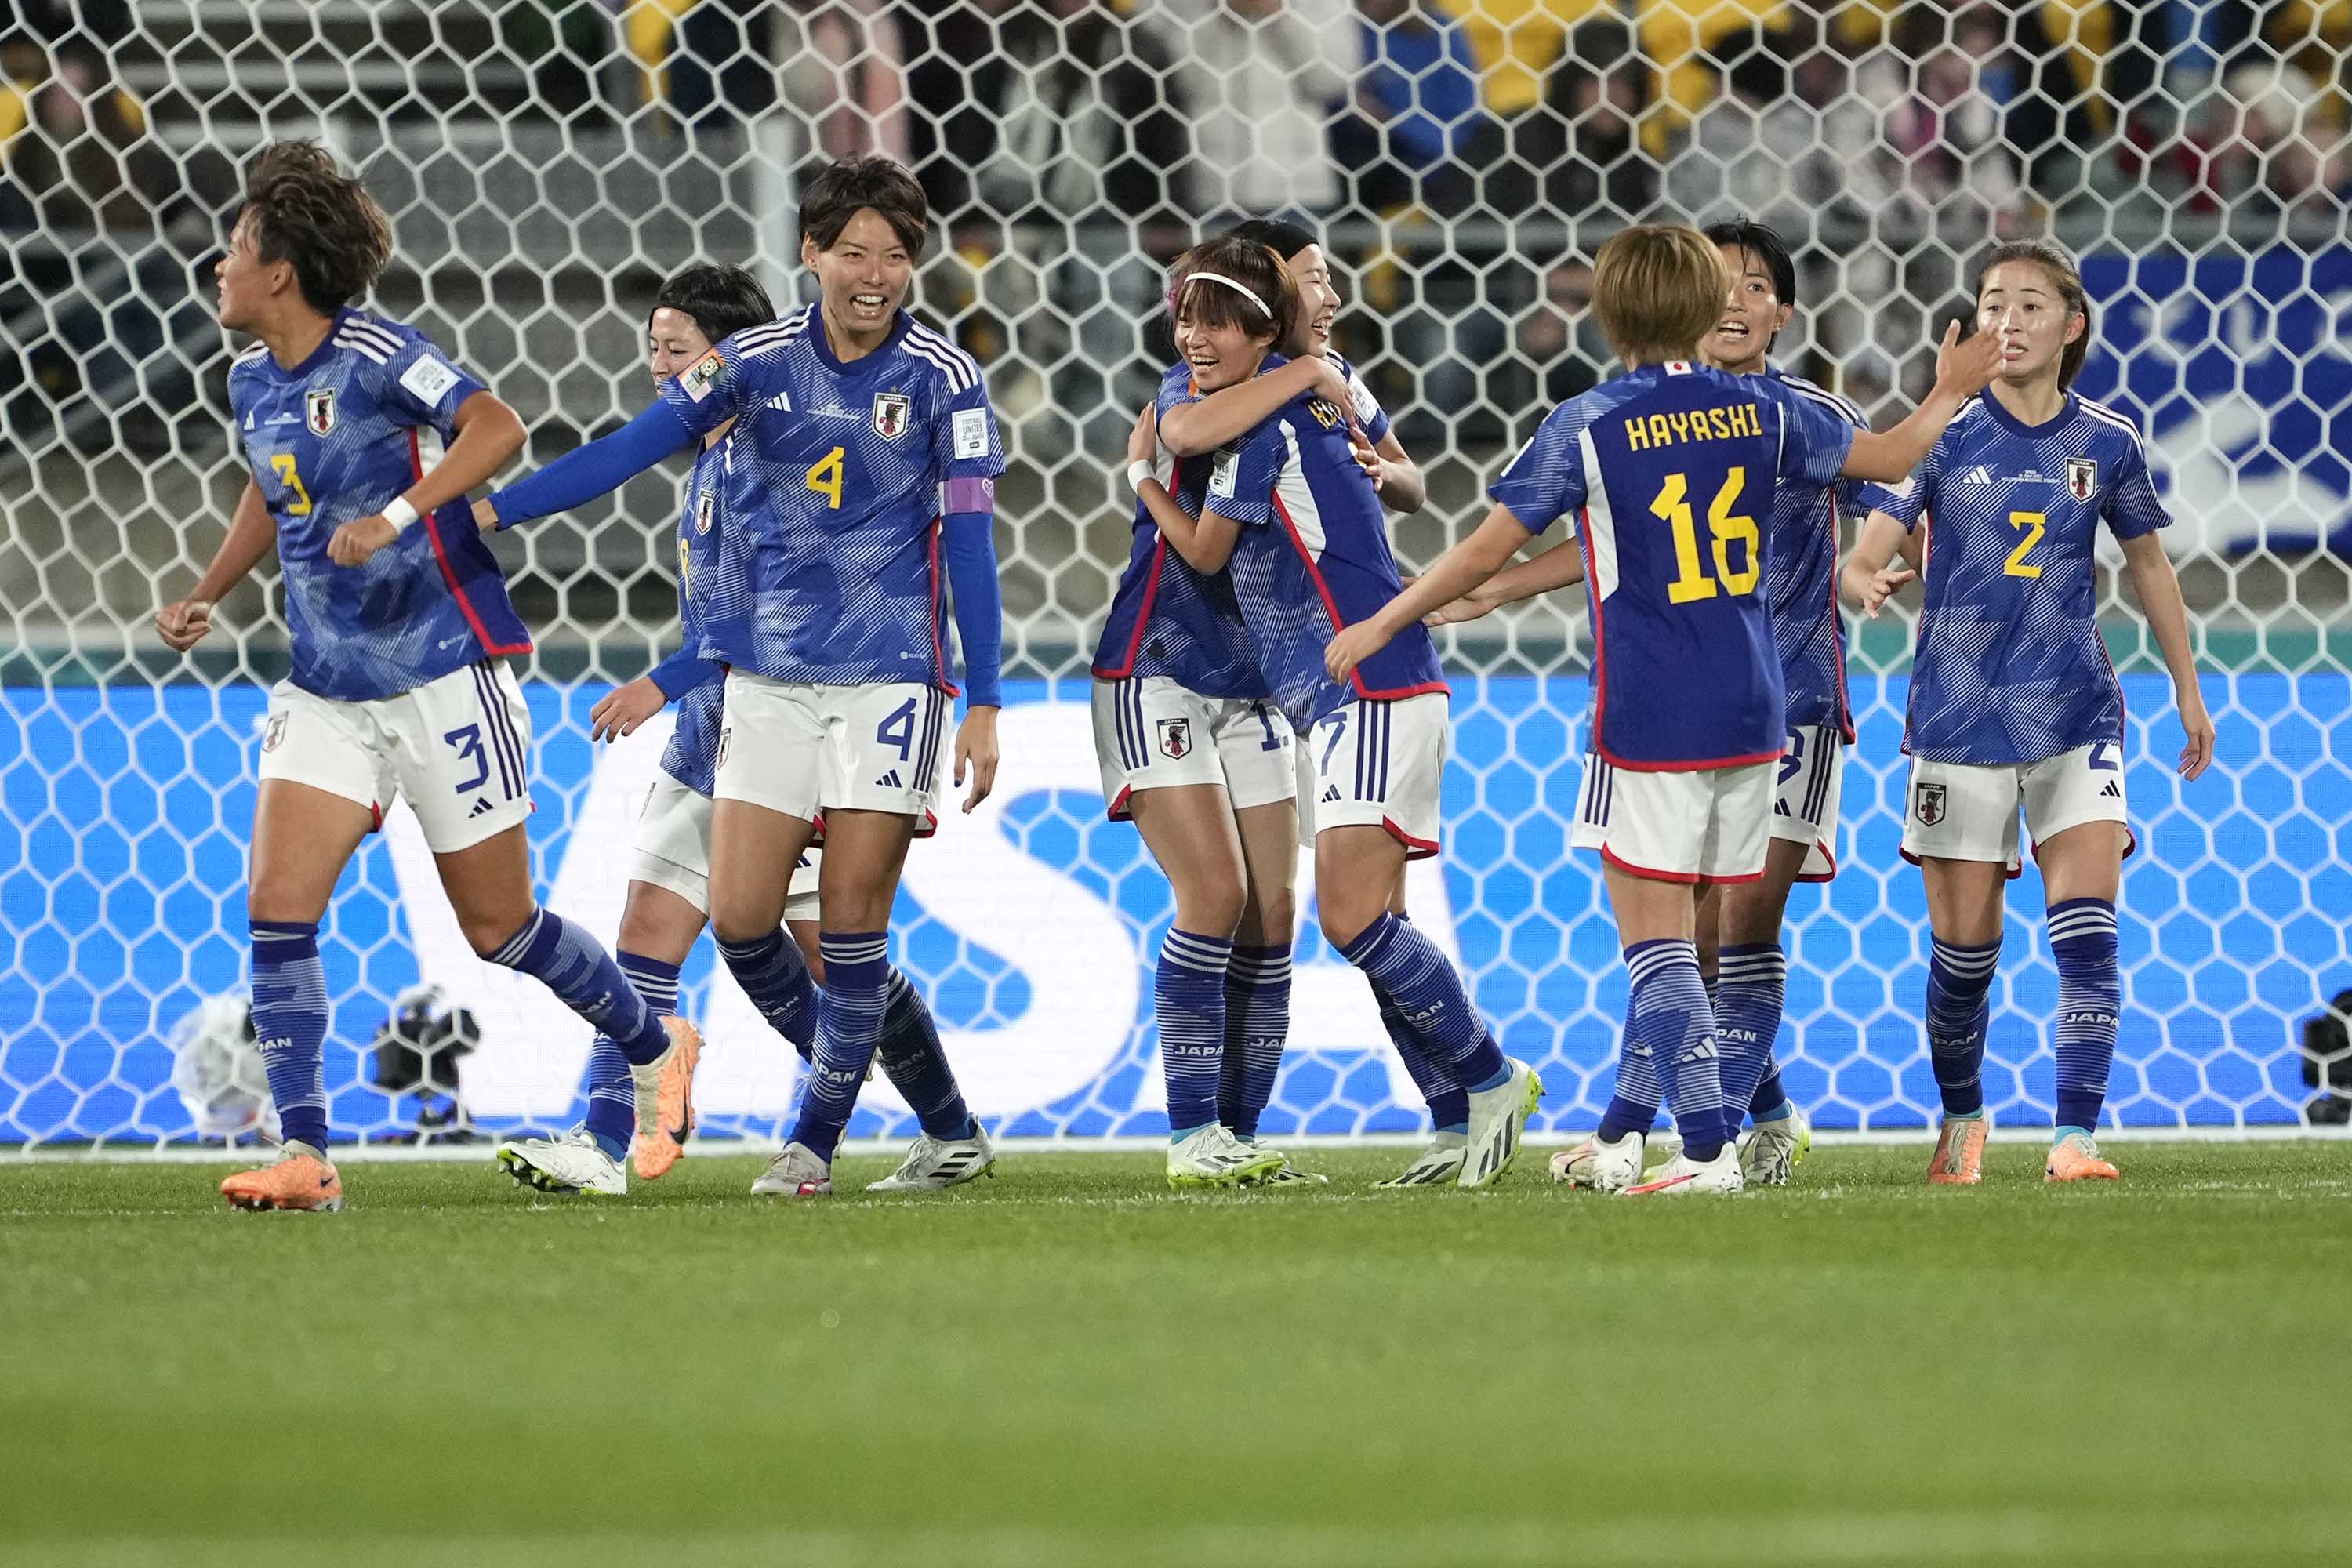 La japonesa Hinata Miyazawa, en el centro, celebra con sus compañeras de equipo tras marcar el primer gol durante el partido entre Japón y España en Wellington, Nueva Zelanda, el lunes 31 de julio. John Cowpland/AP